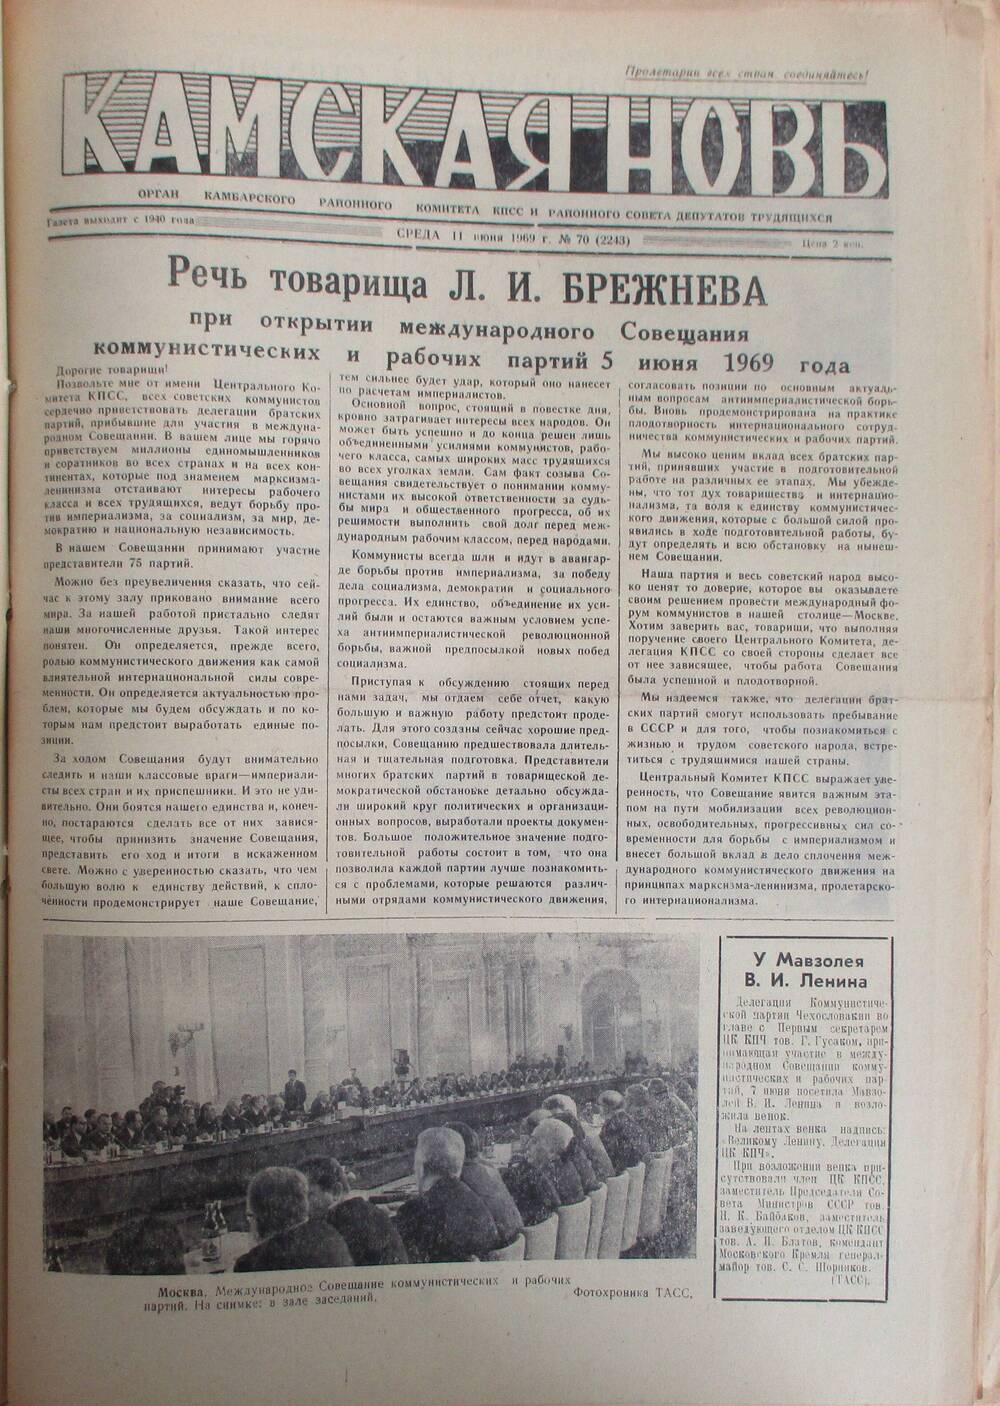 Газеты Камская новь за 1969 год, орган Камбарского райсовета и  РККПСС, с №1 по №66, с №68 по №156. №70.